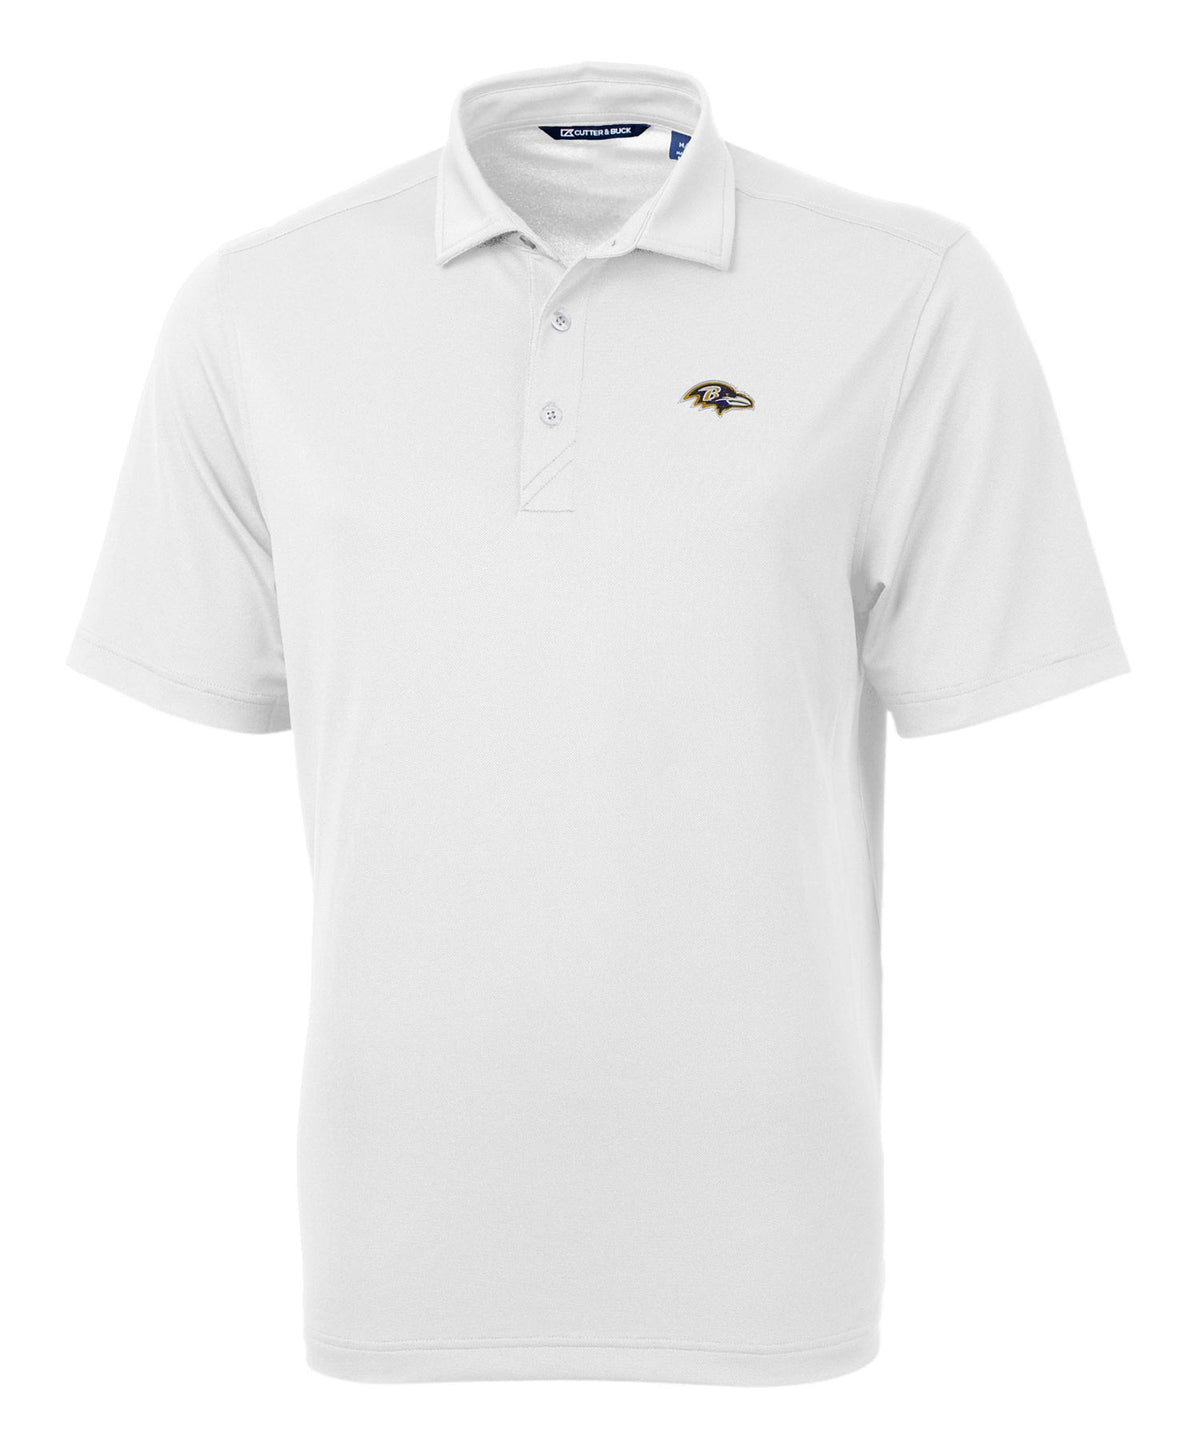 Cutter & Buck Baltimore Ravens Short Sleeve Polo Knit Shirt, Men's Big & Tall